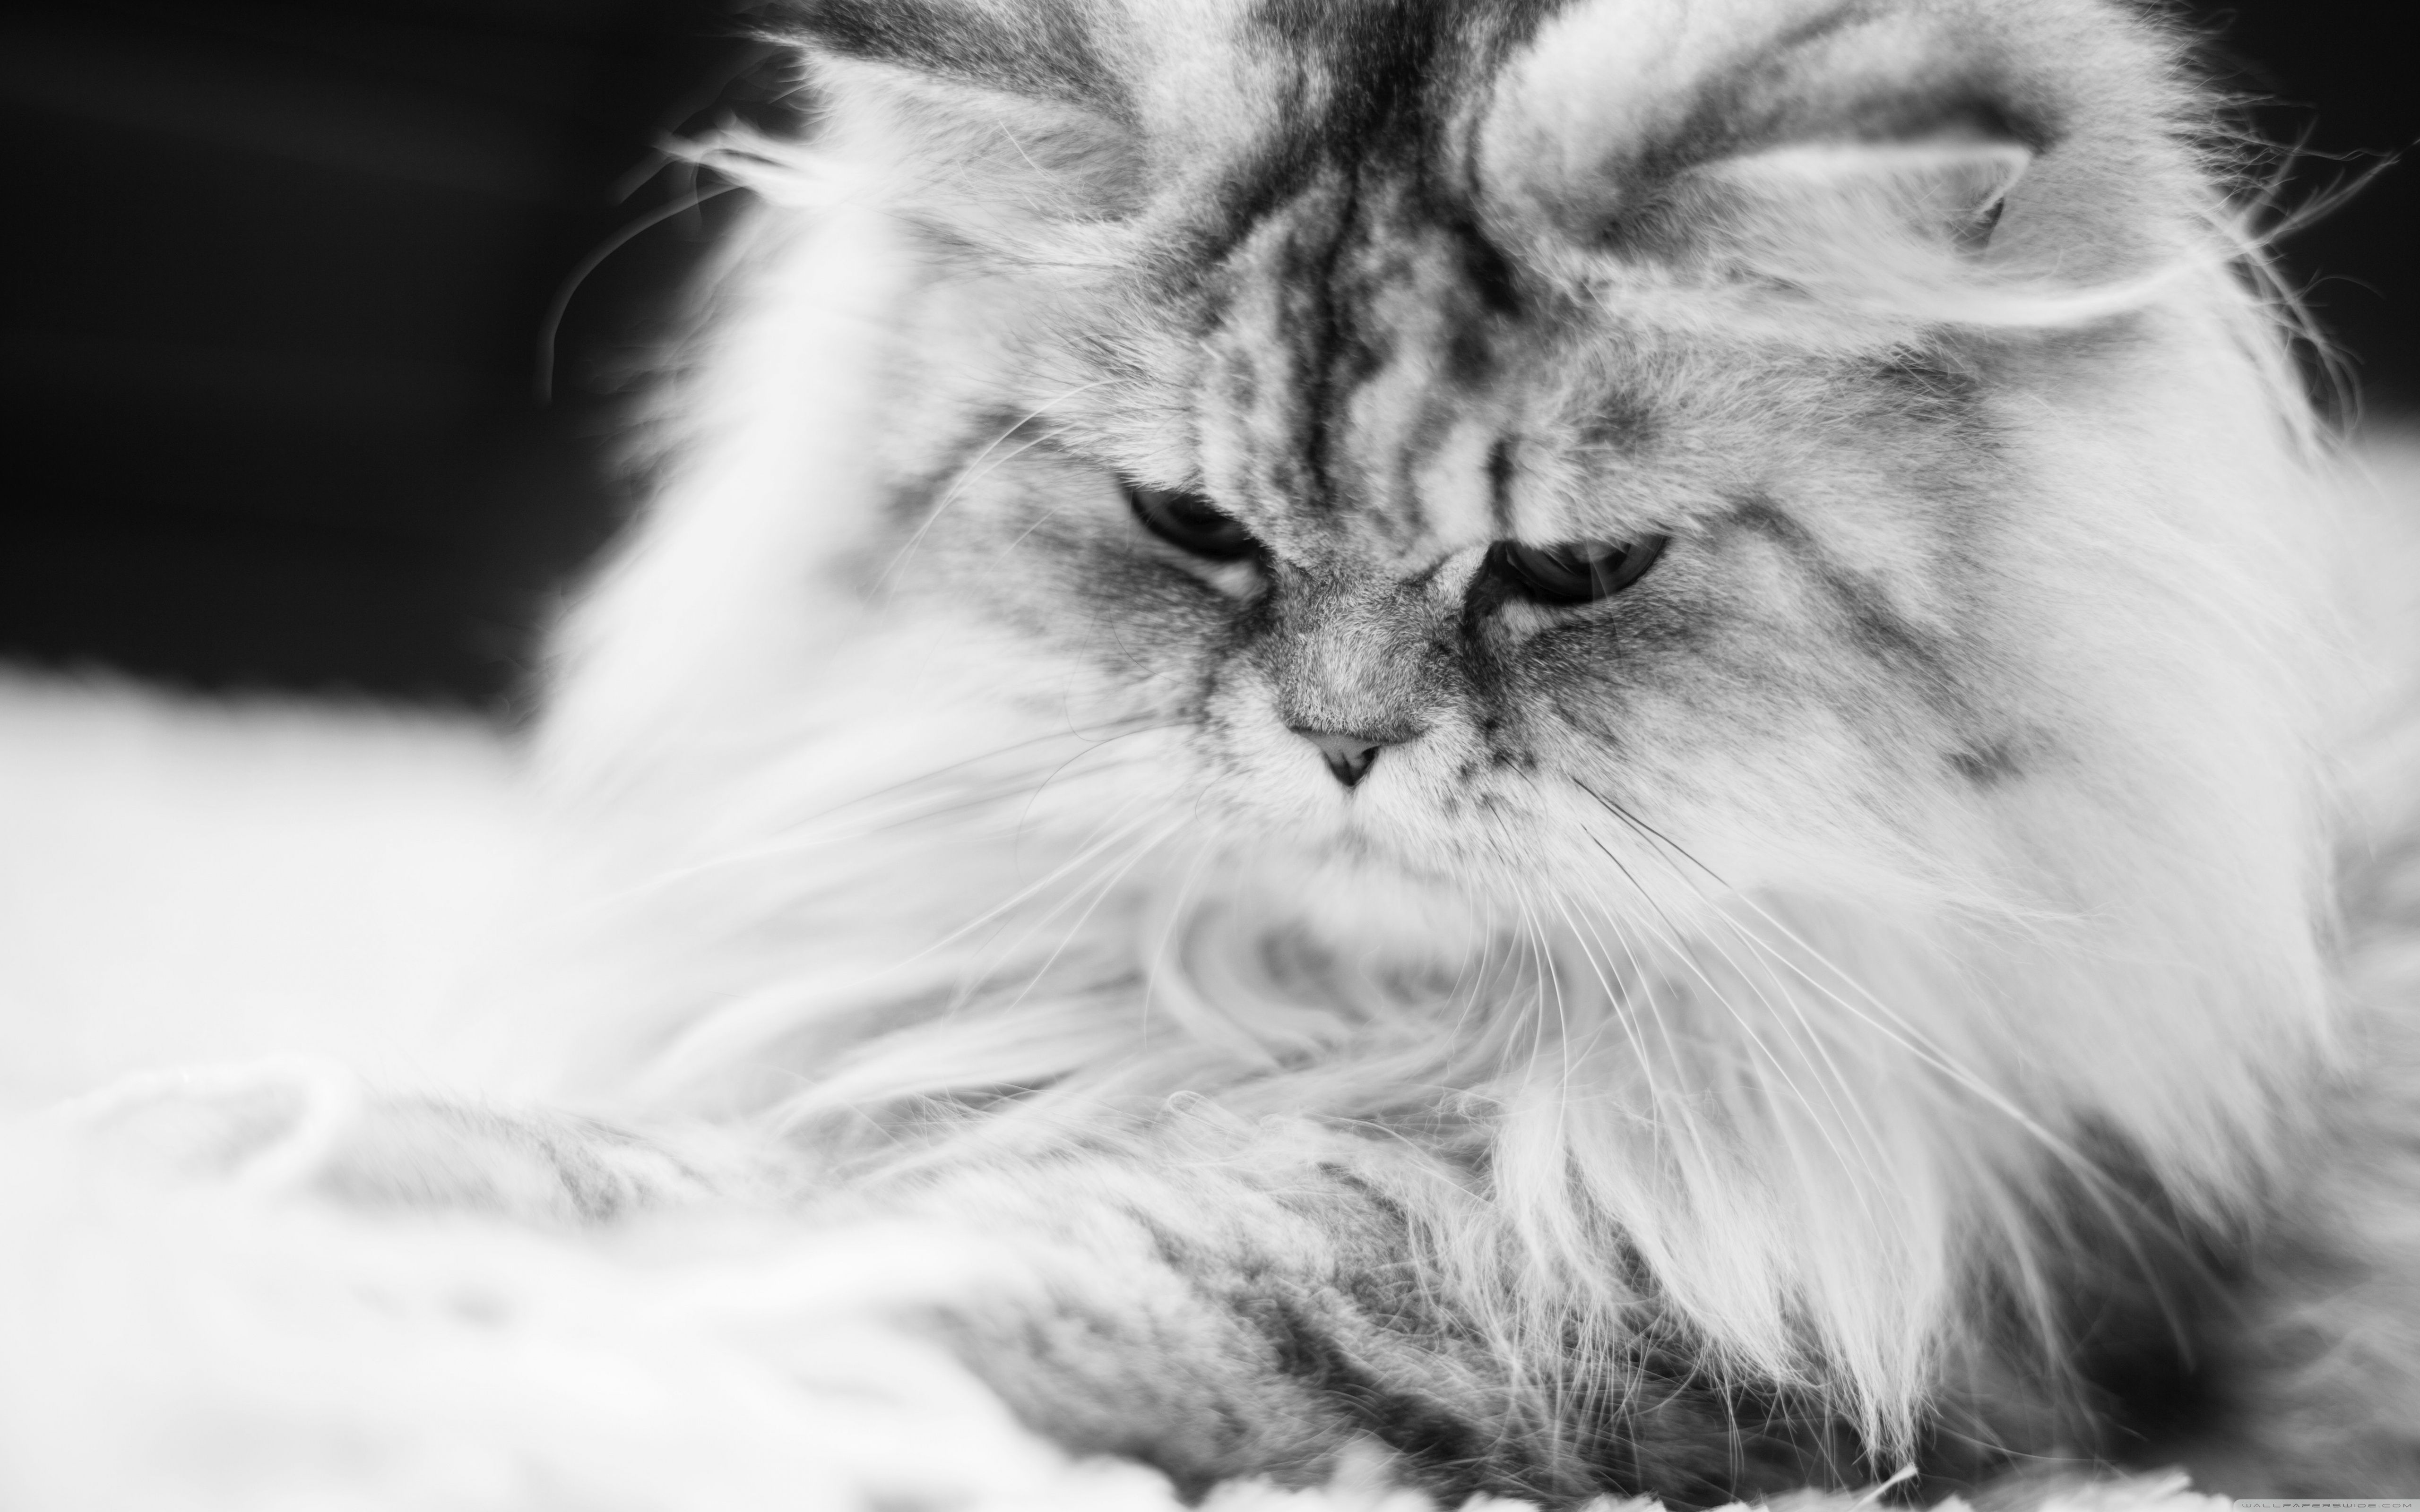 Exsotic Long Hair Persian Cat .itl.cat